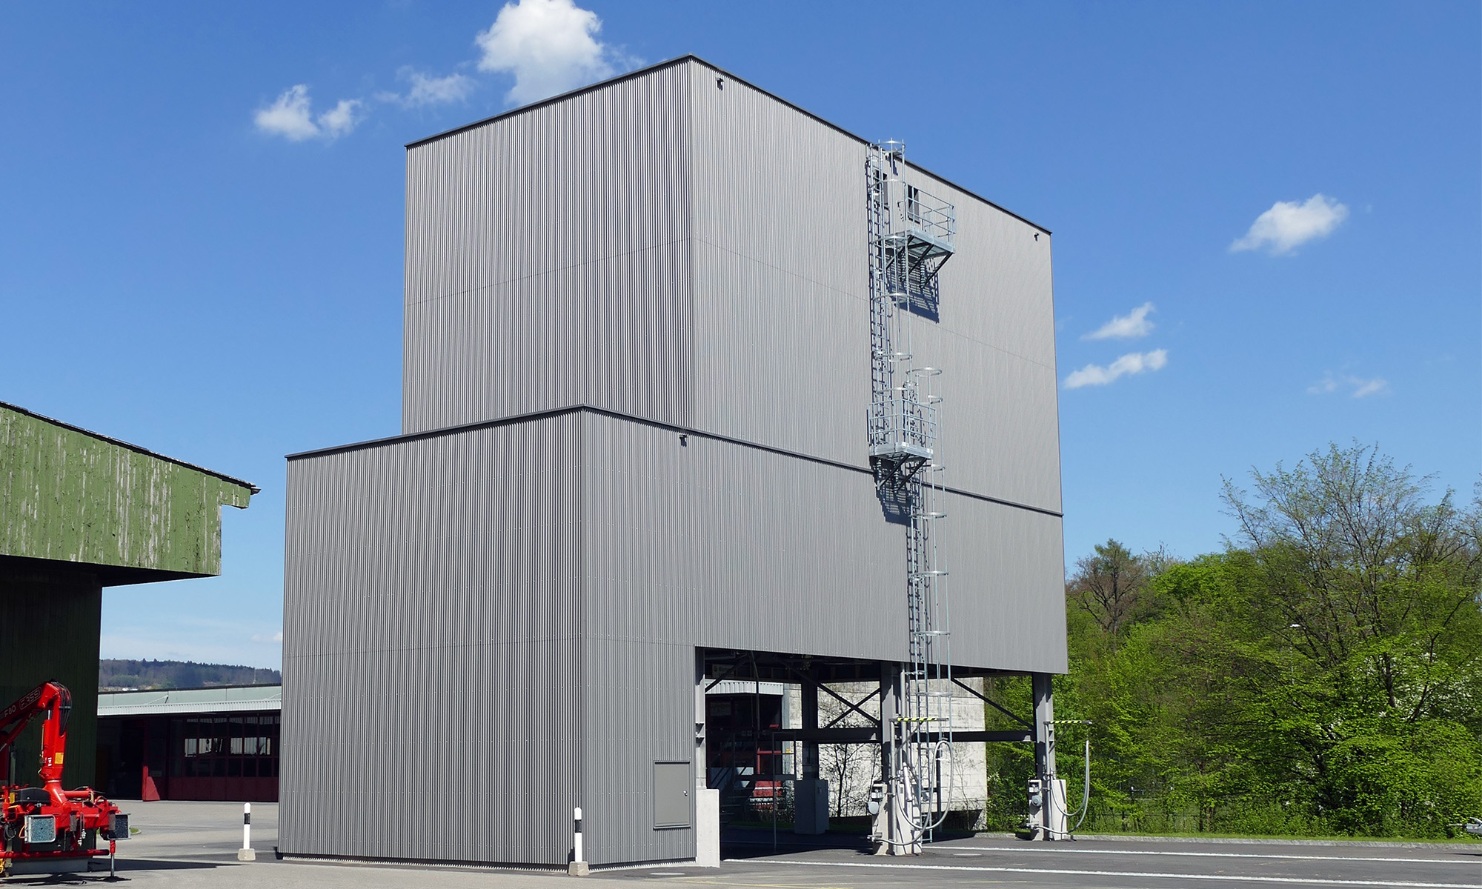 Silo modulaire architectural gris clair de 450 m³ avec échelle en acier placé sur la zone de l’atelier